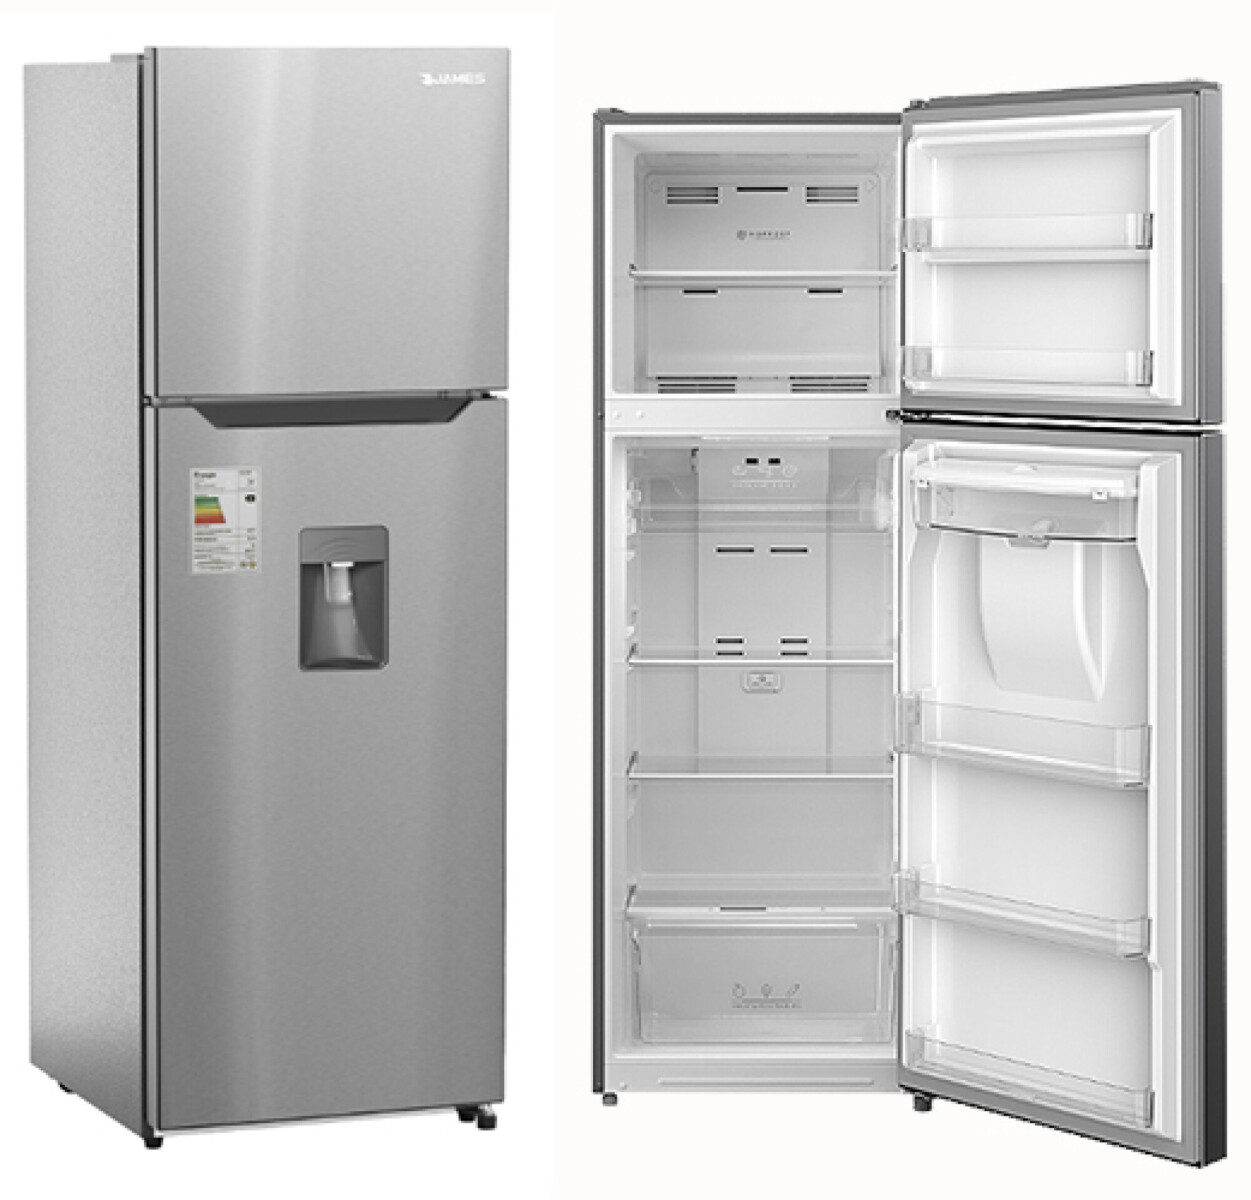 Refrigerador James RJ 401I Inox con dispensador 